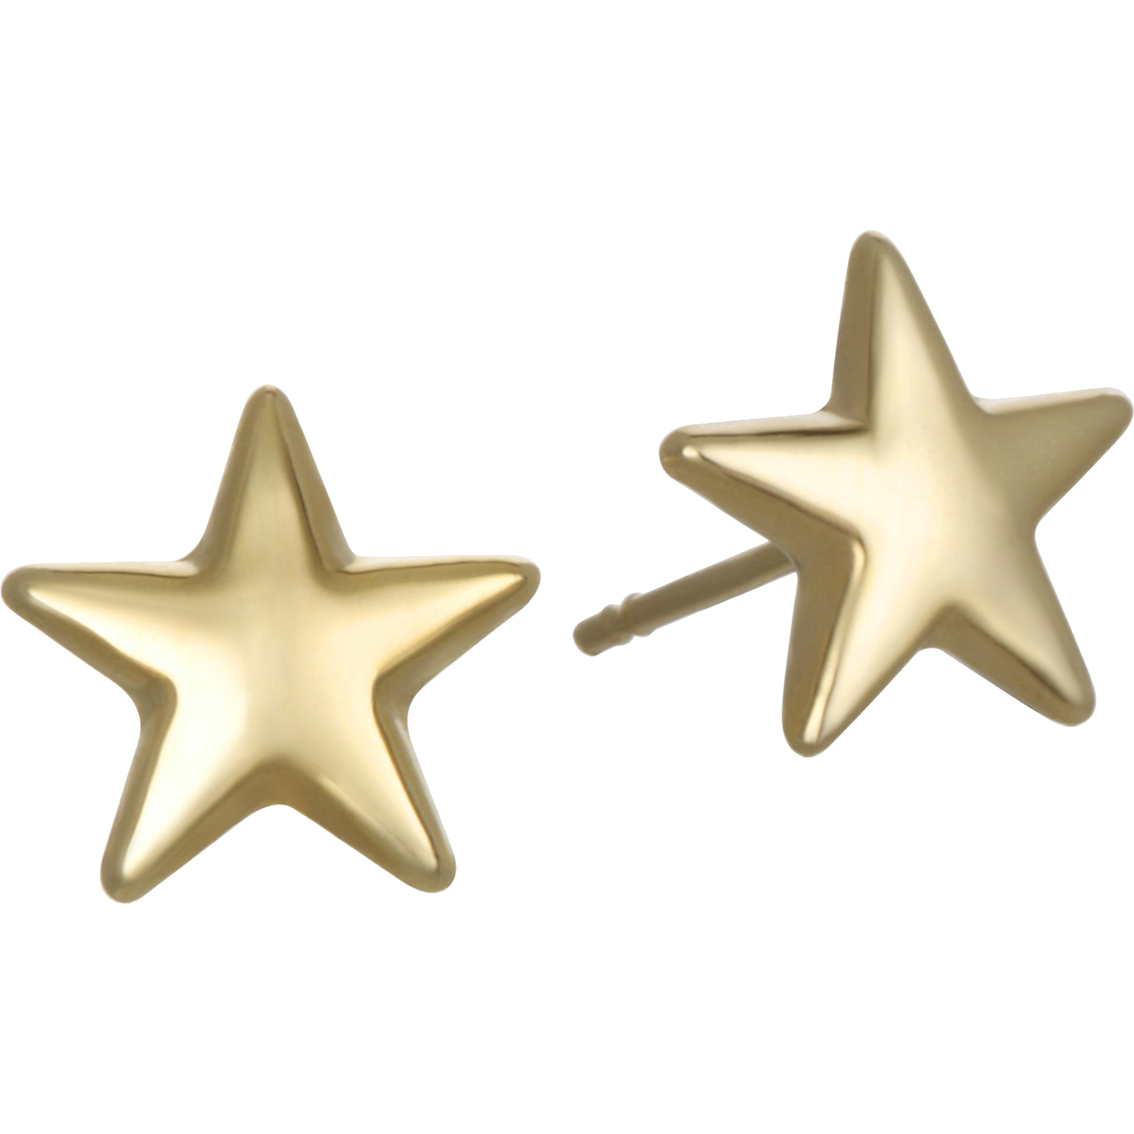 10k Gold Polished Star Stud Earrings | Gold Earrings | Jewelry ...